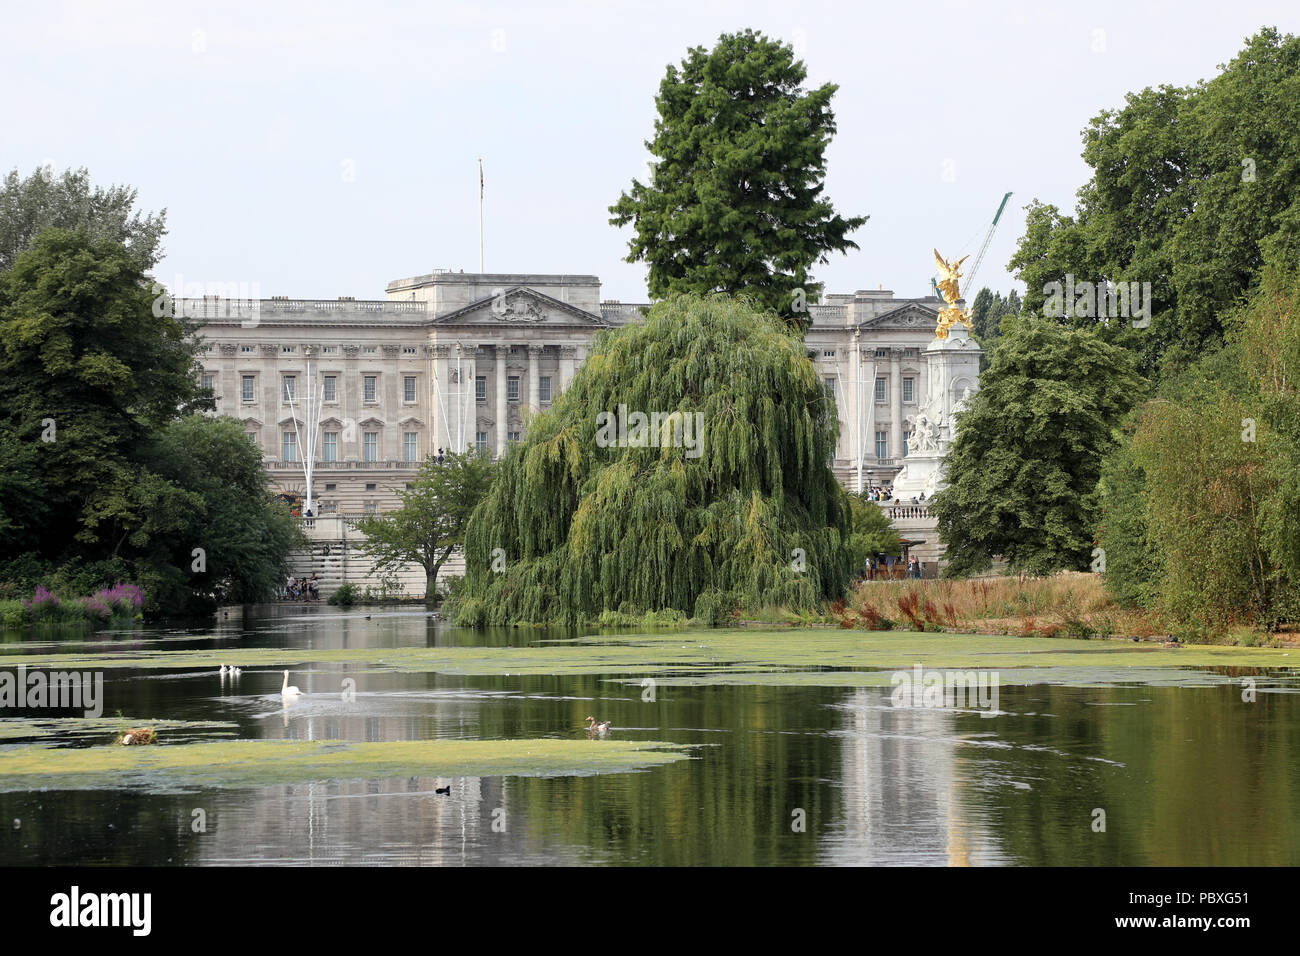 London / UK - 26 Luglio 2018: Vista di Buckingham Palace la casa del monarca britannico, attraverso gli alberi di St James Park nel centro di Londra Foto Stock